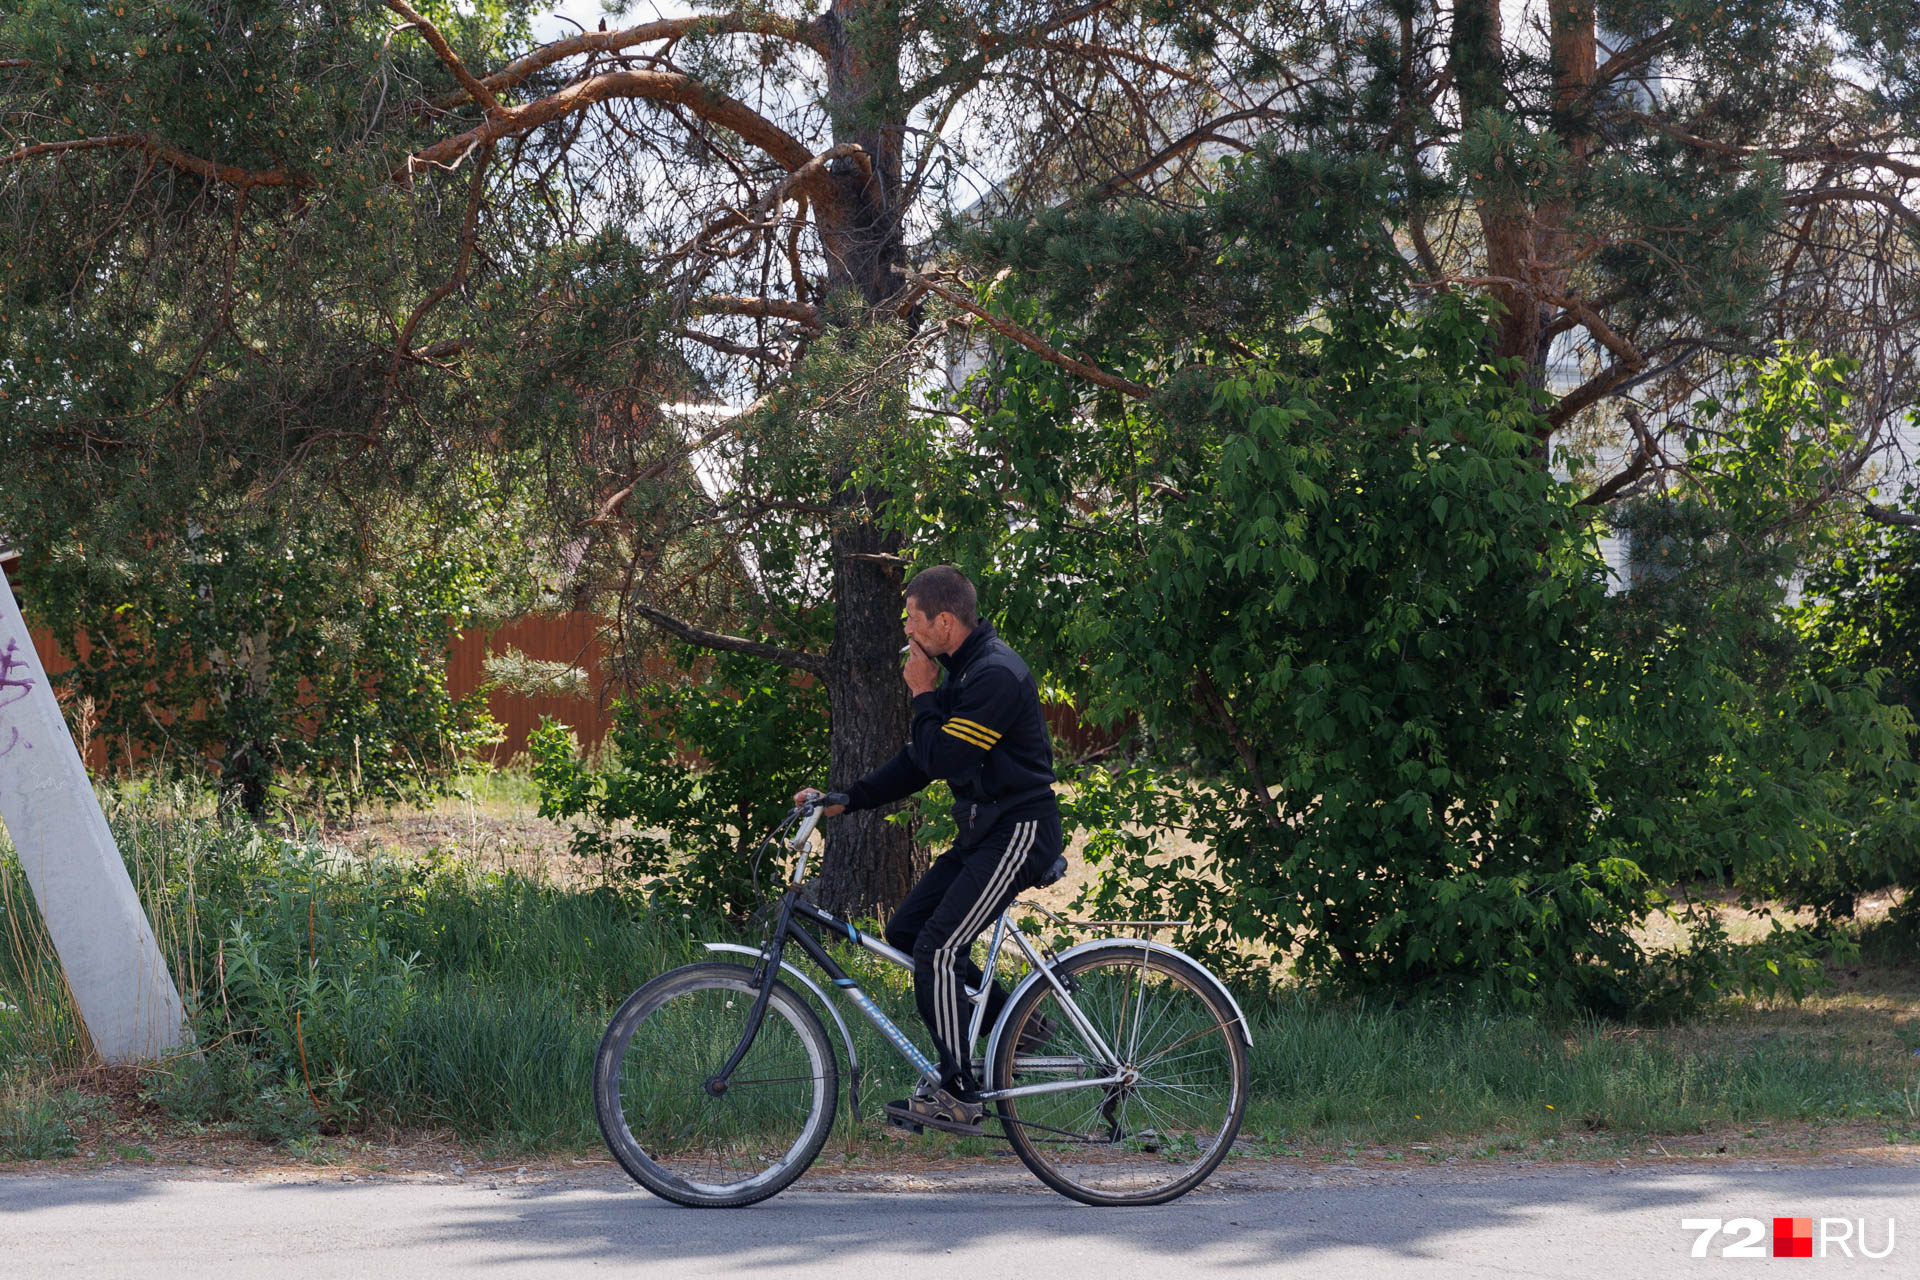 По Тюмени так вальяжно на велосипеде не покатаешься: везде самокатчики и спешащие по делами пешеходы. А в деревне — свобода и простор!